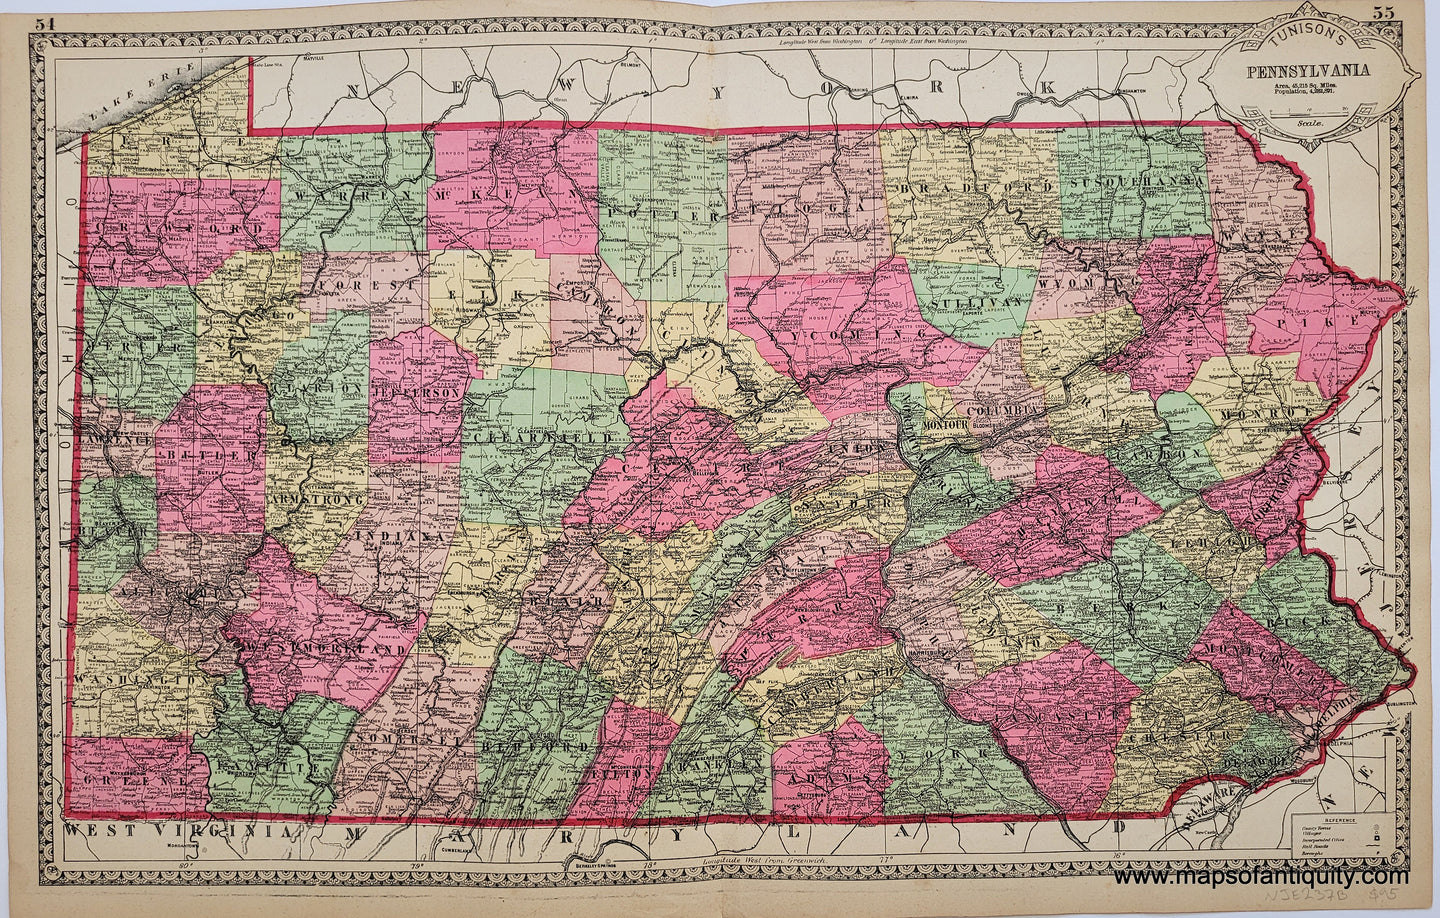 1887 - Tunison's Pennsylvania - Antique Map